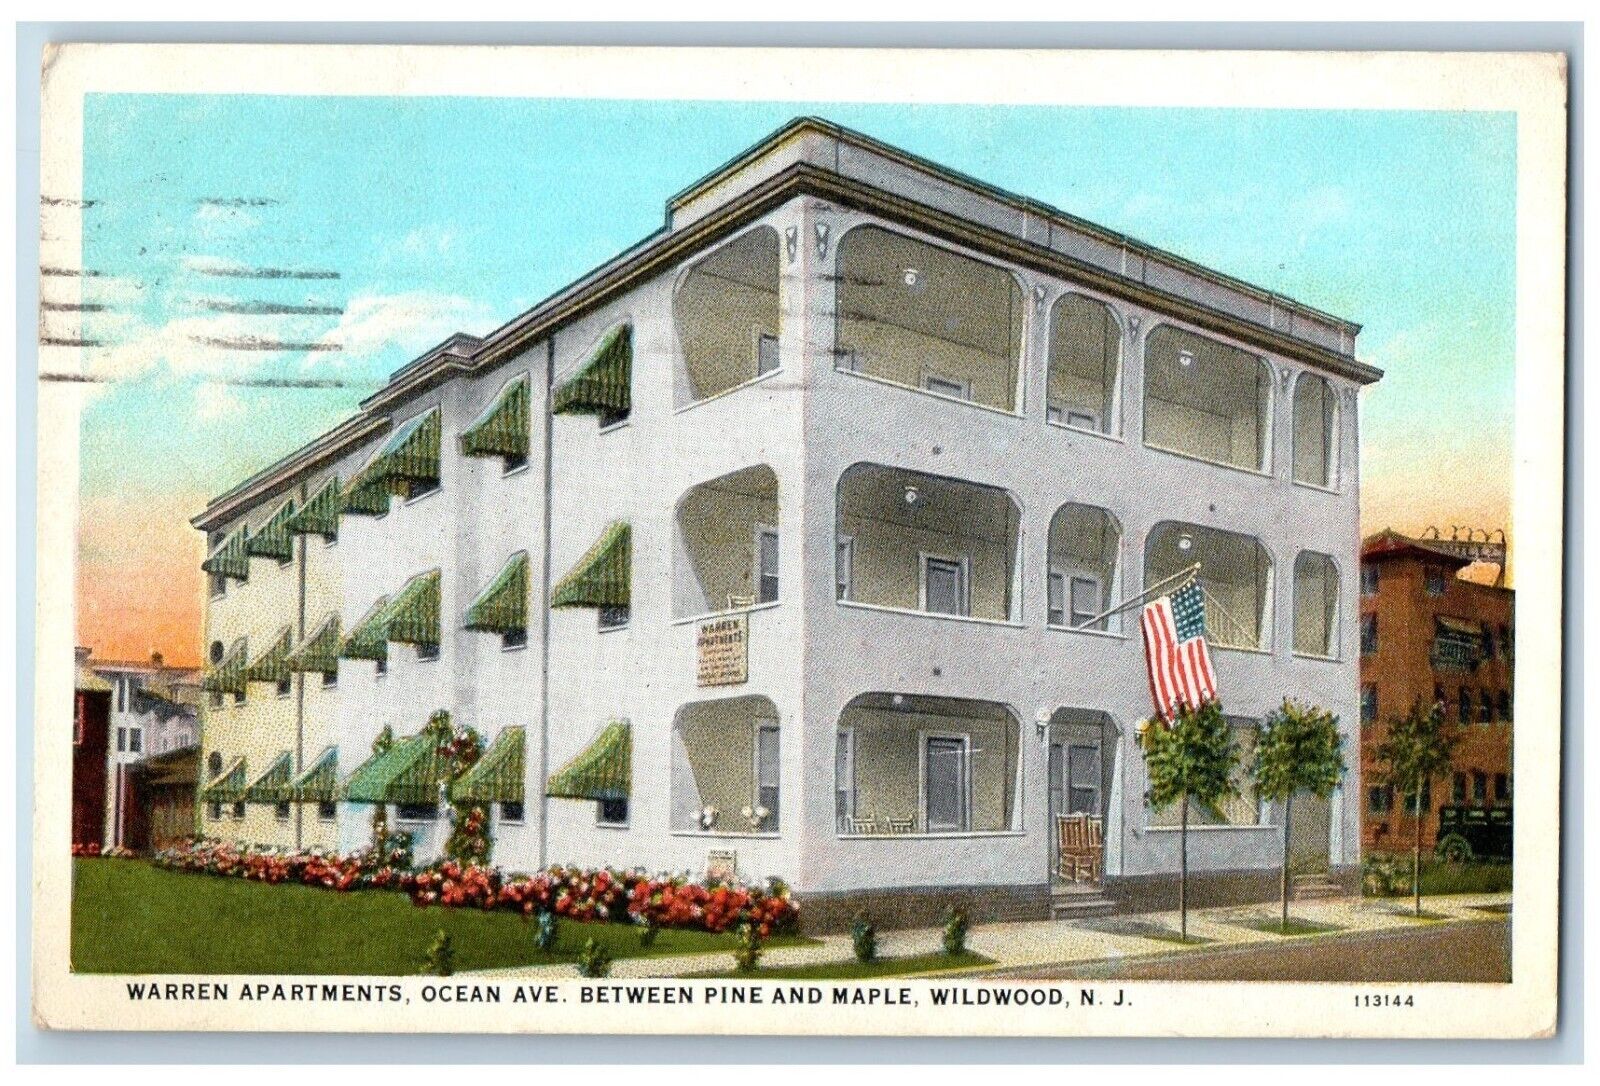 Wildwood New Jersey NJ Postcard Warren Apartments Ocean Ave. Between Pine c1928